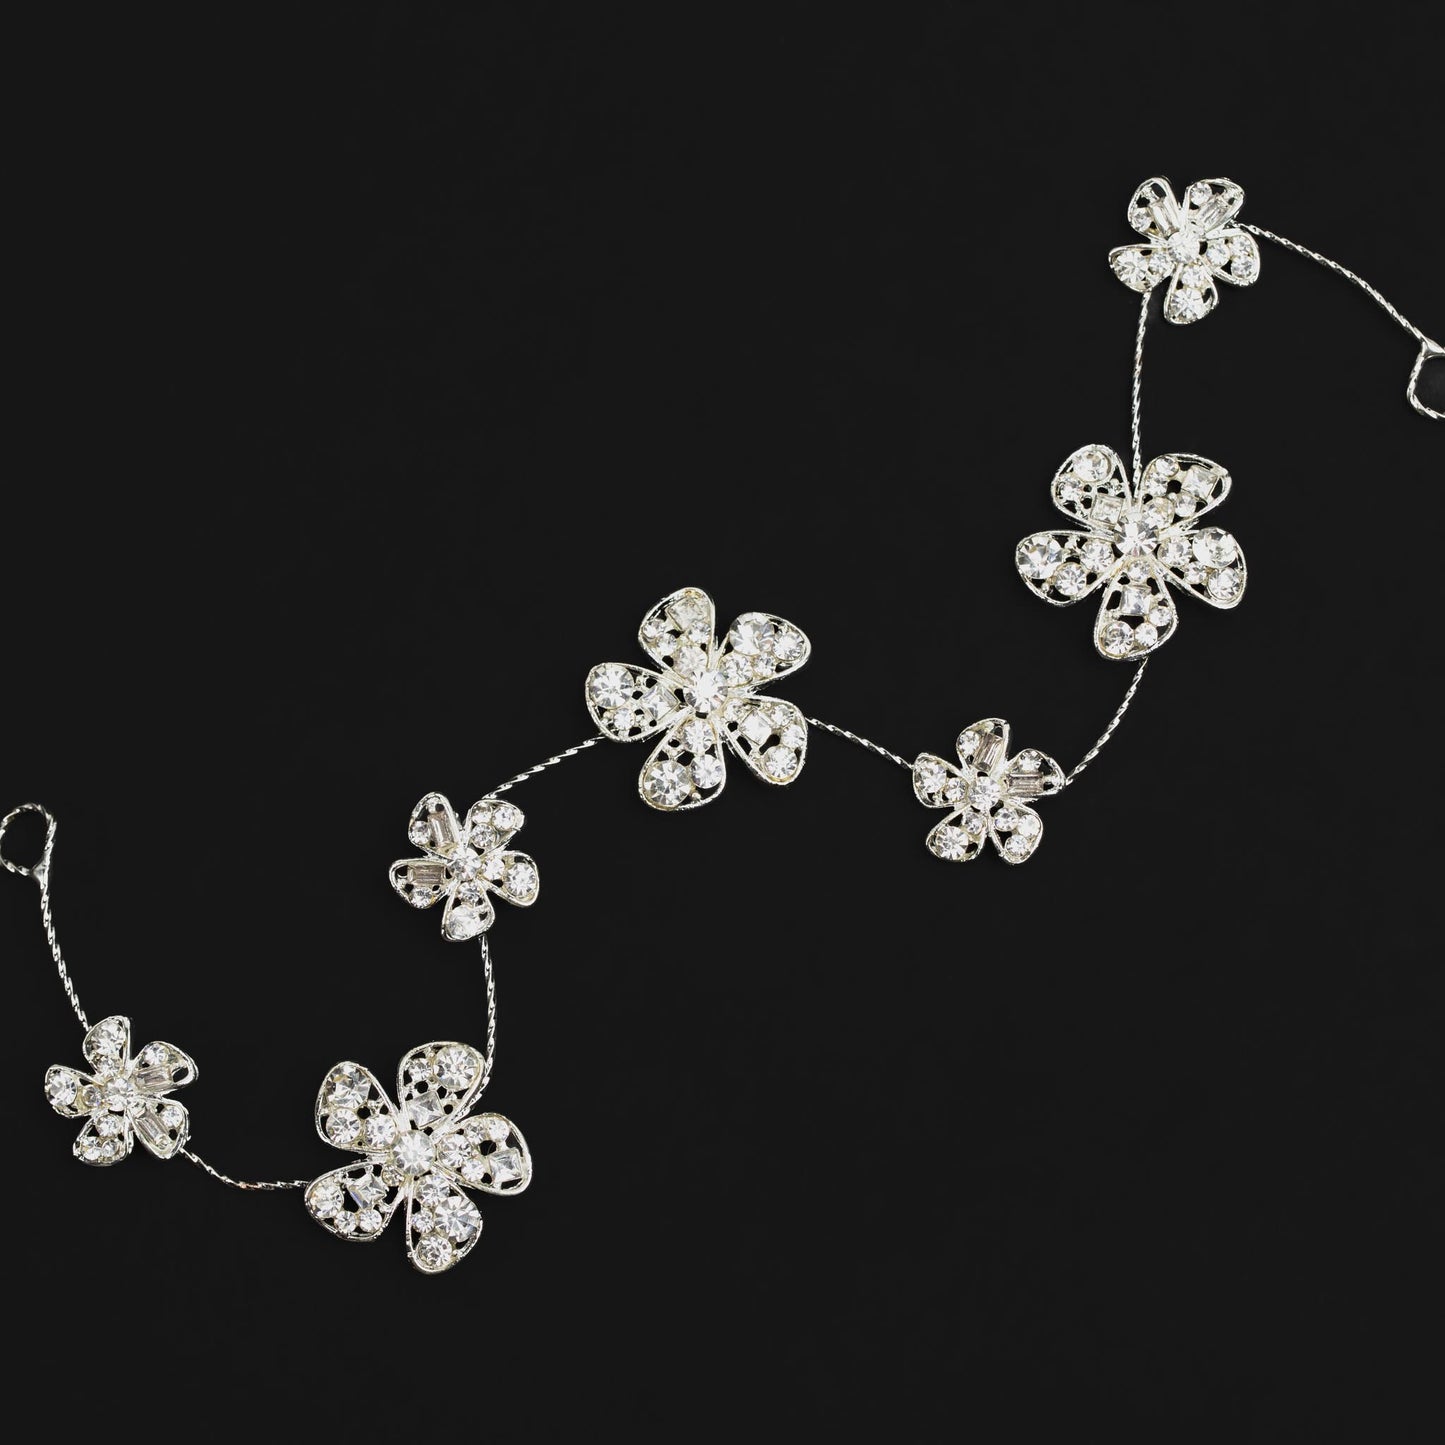 Diademă elegantă maleabilă cu strasuri, pietre, flori - Argintiu